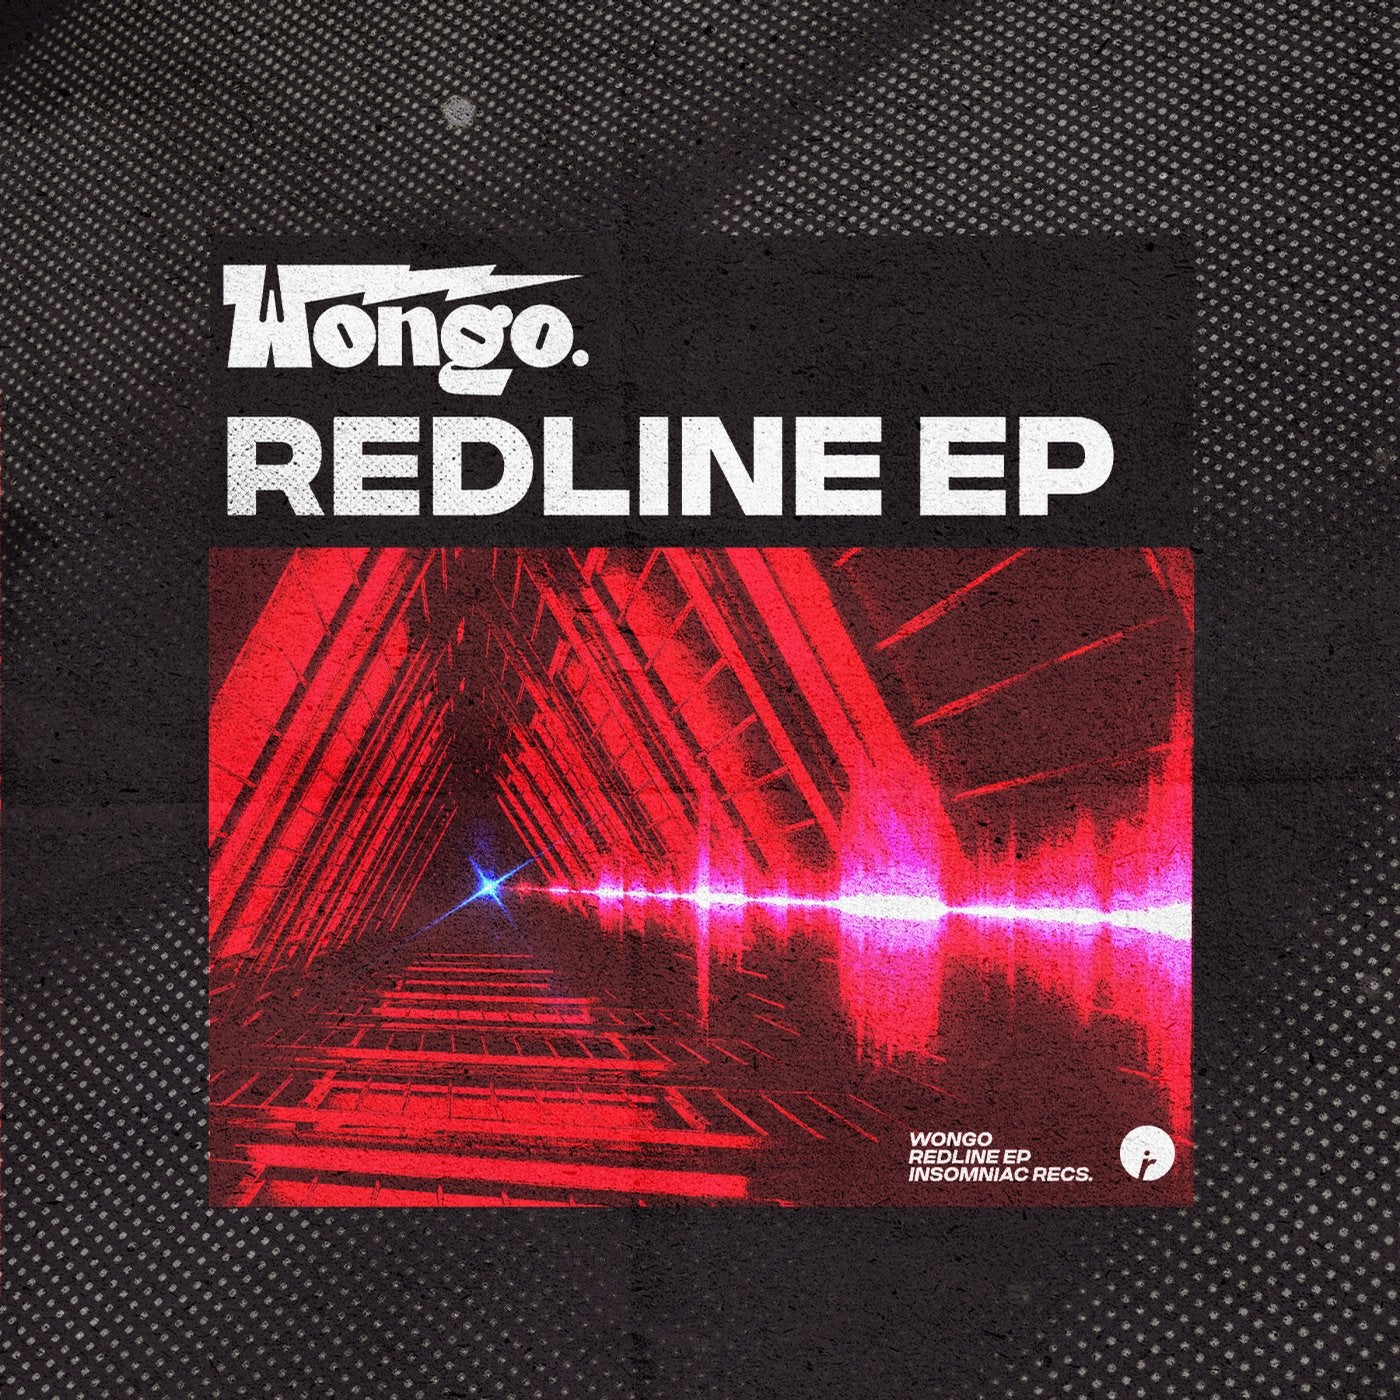 Redline EP